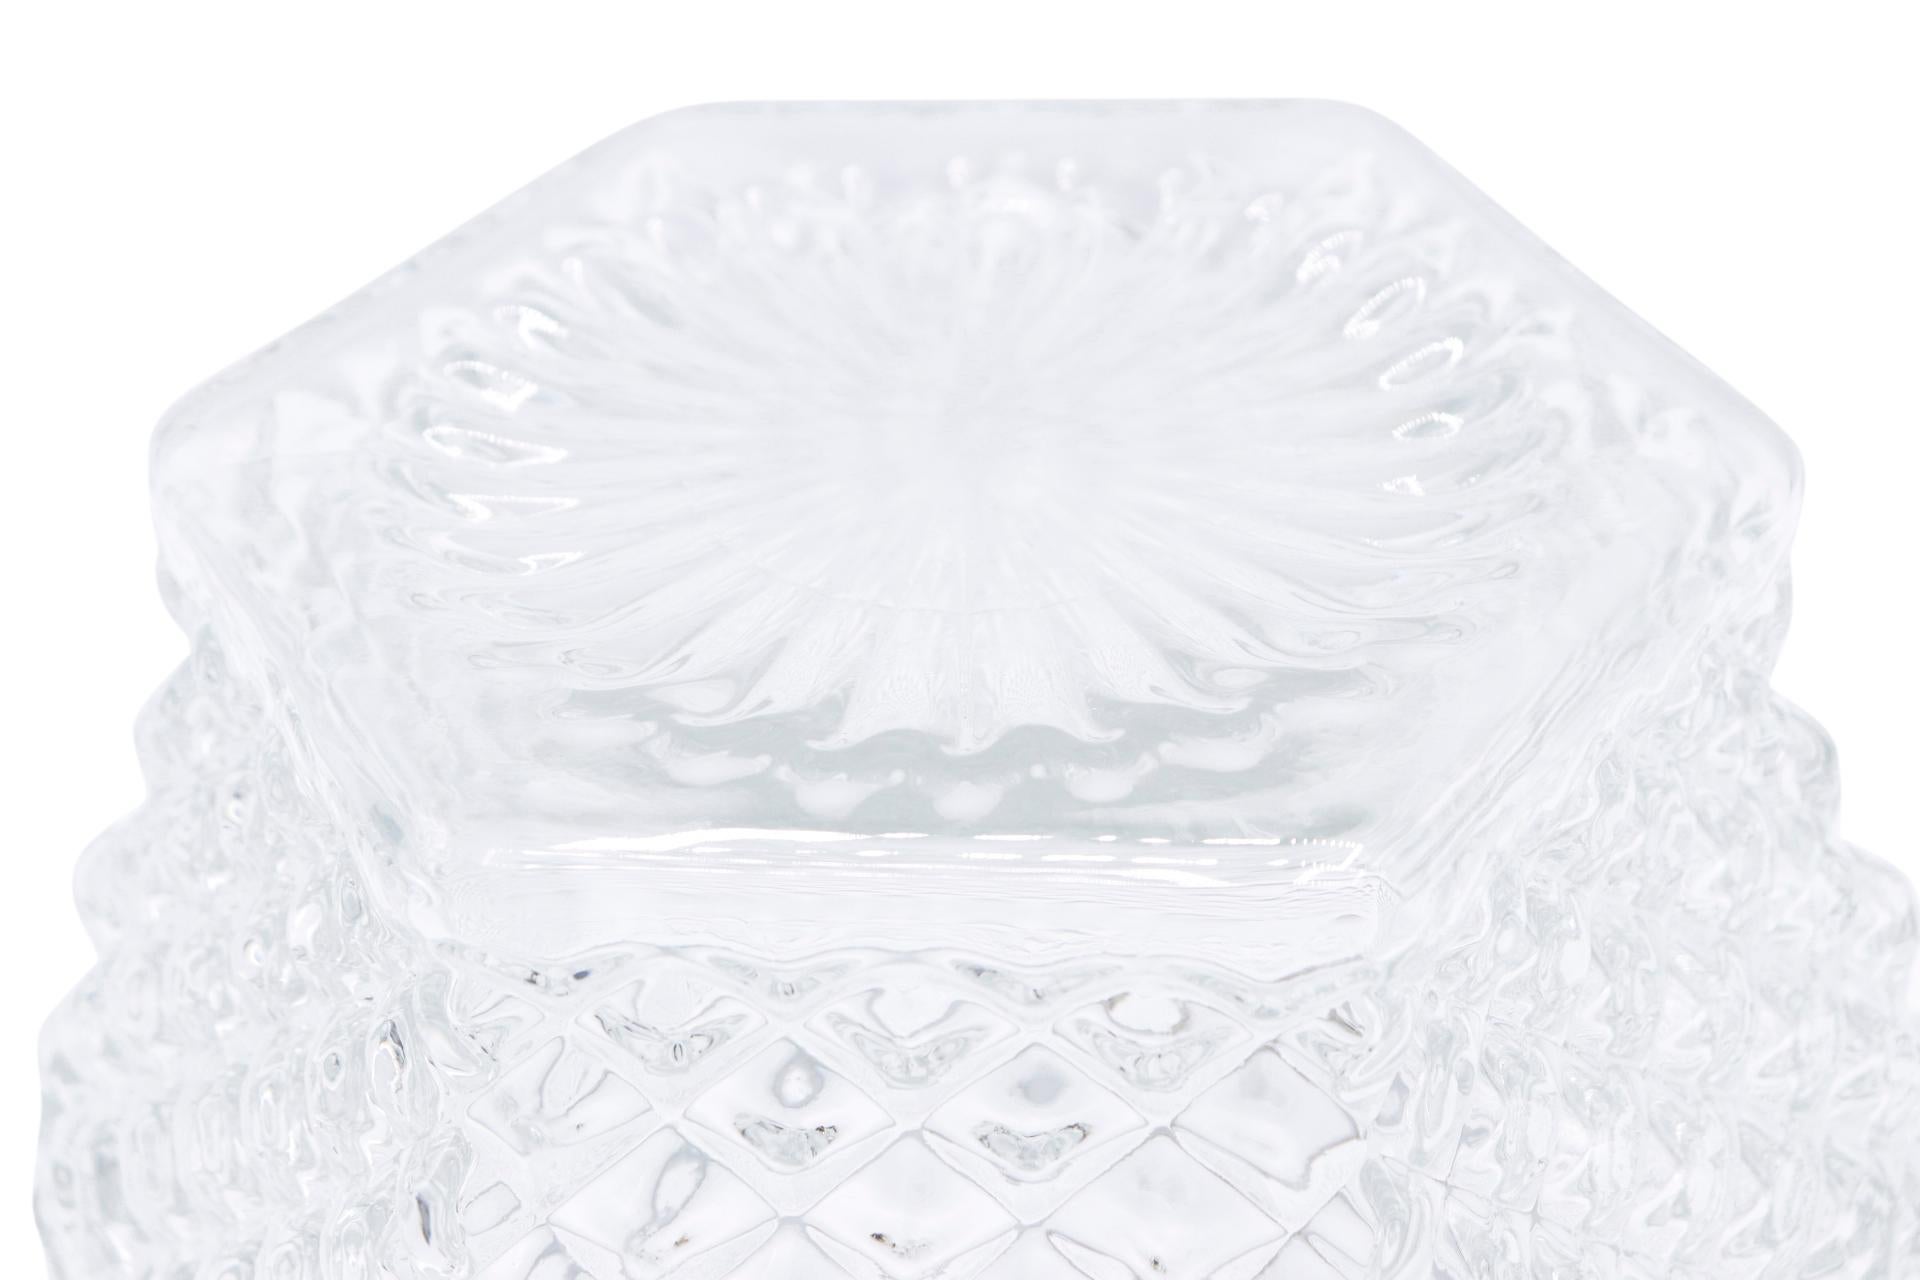 Wexford Crystal Ice Bucket 1